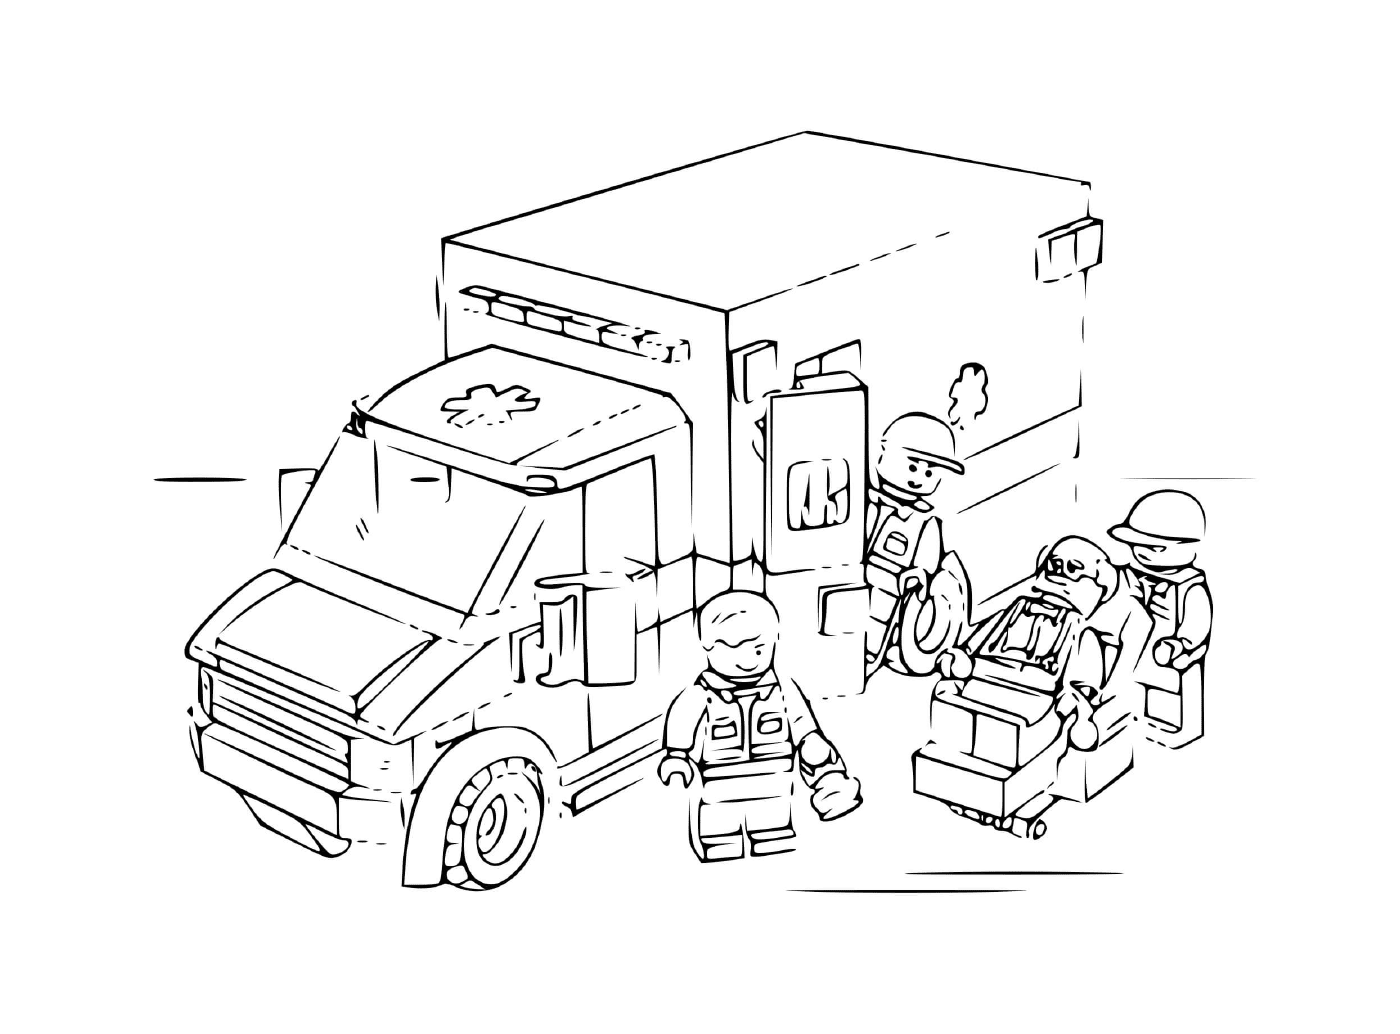  Polizei Lego Krankenwagen 